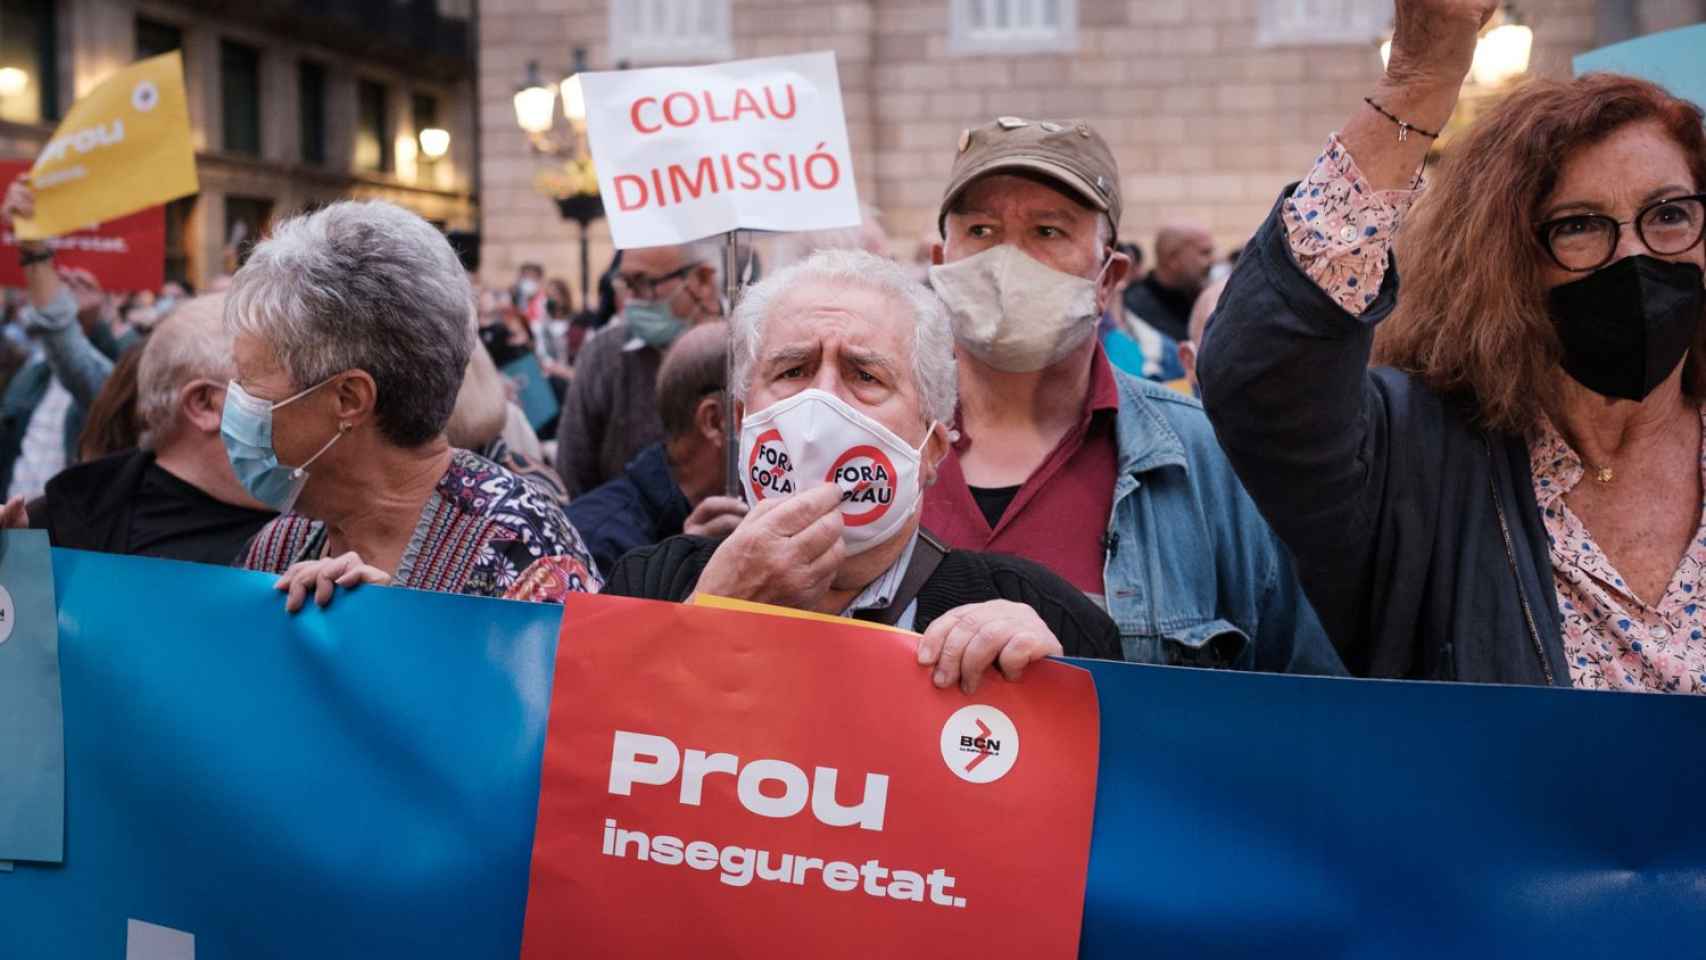 Manifestantes en la concentración de 'Barcelona és imparable' / PABLO MIRANZO